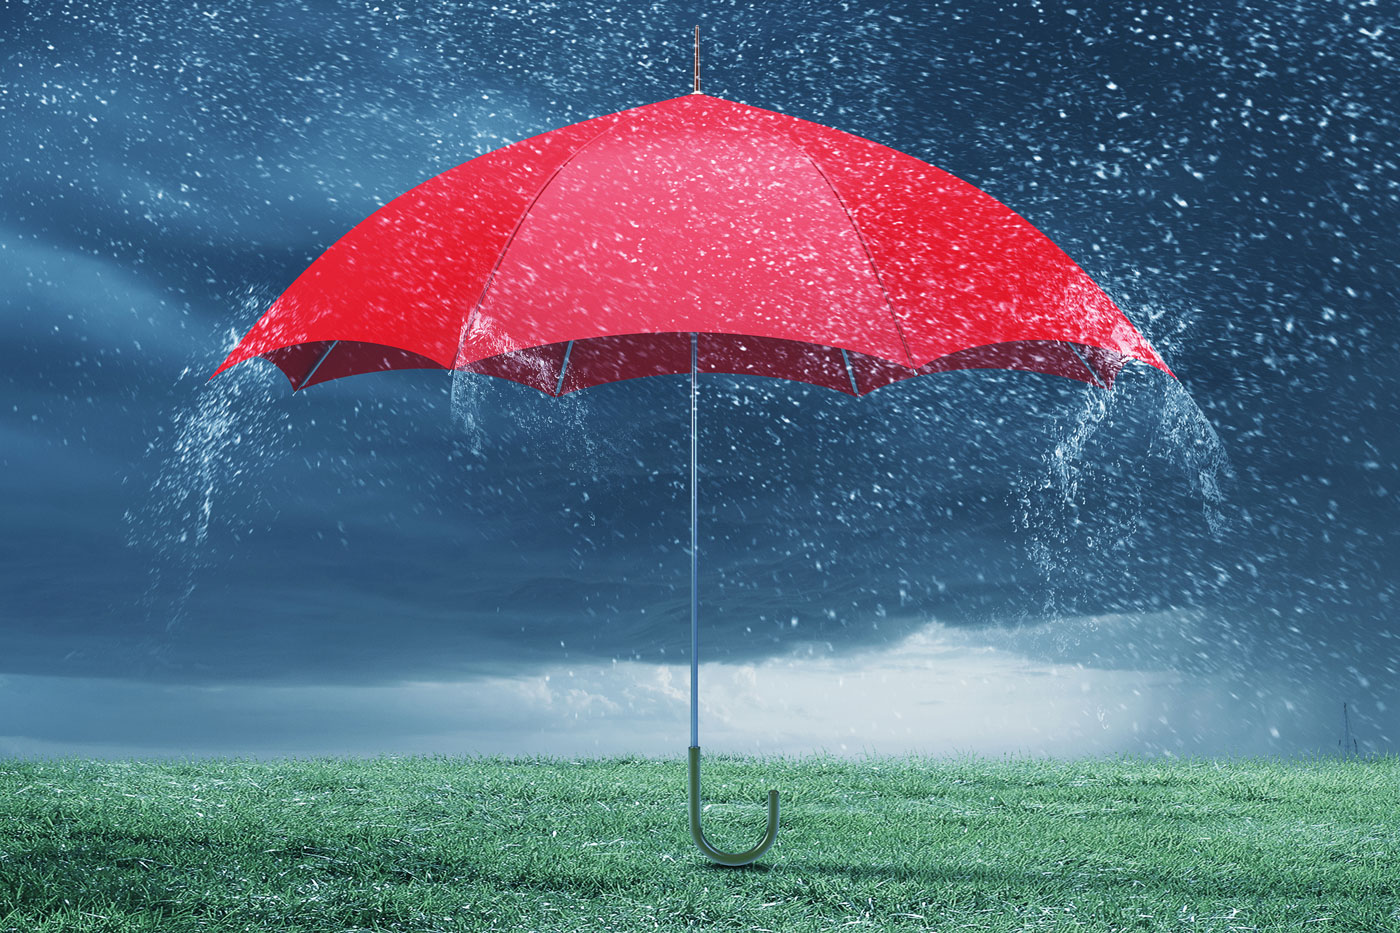 umbrella upright on grass in rain